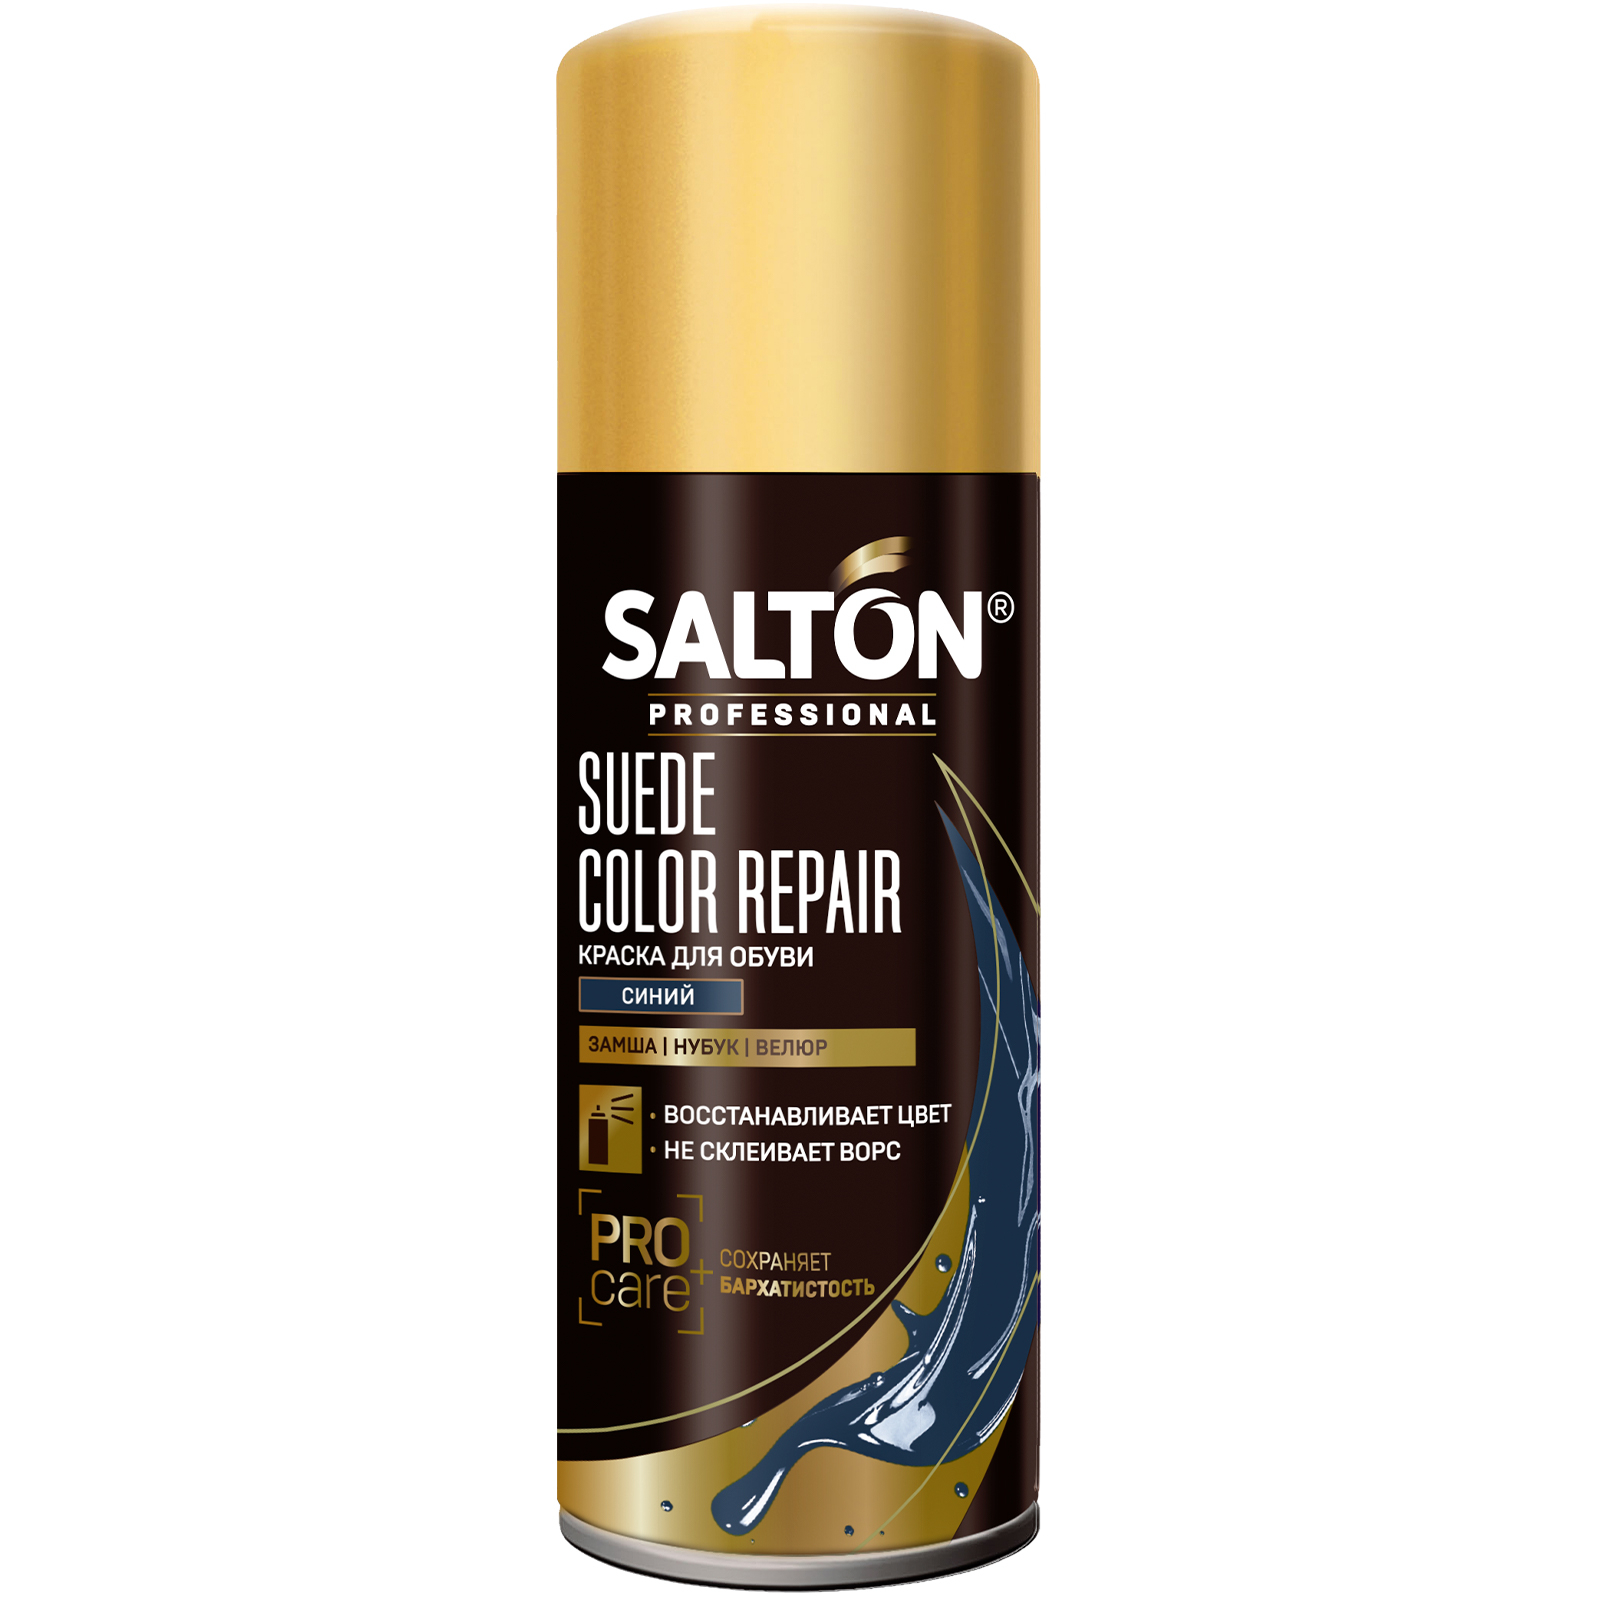 Краска Salton Professional для замши, нубука, велюра, синяя, 200 мл средство для защиты от воды изделий из гладкой кожи замши и нубука salton